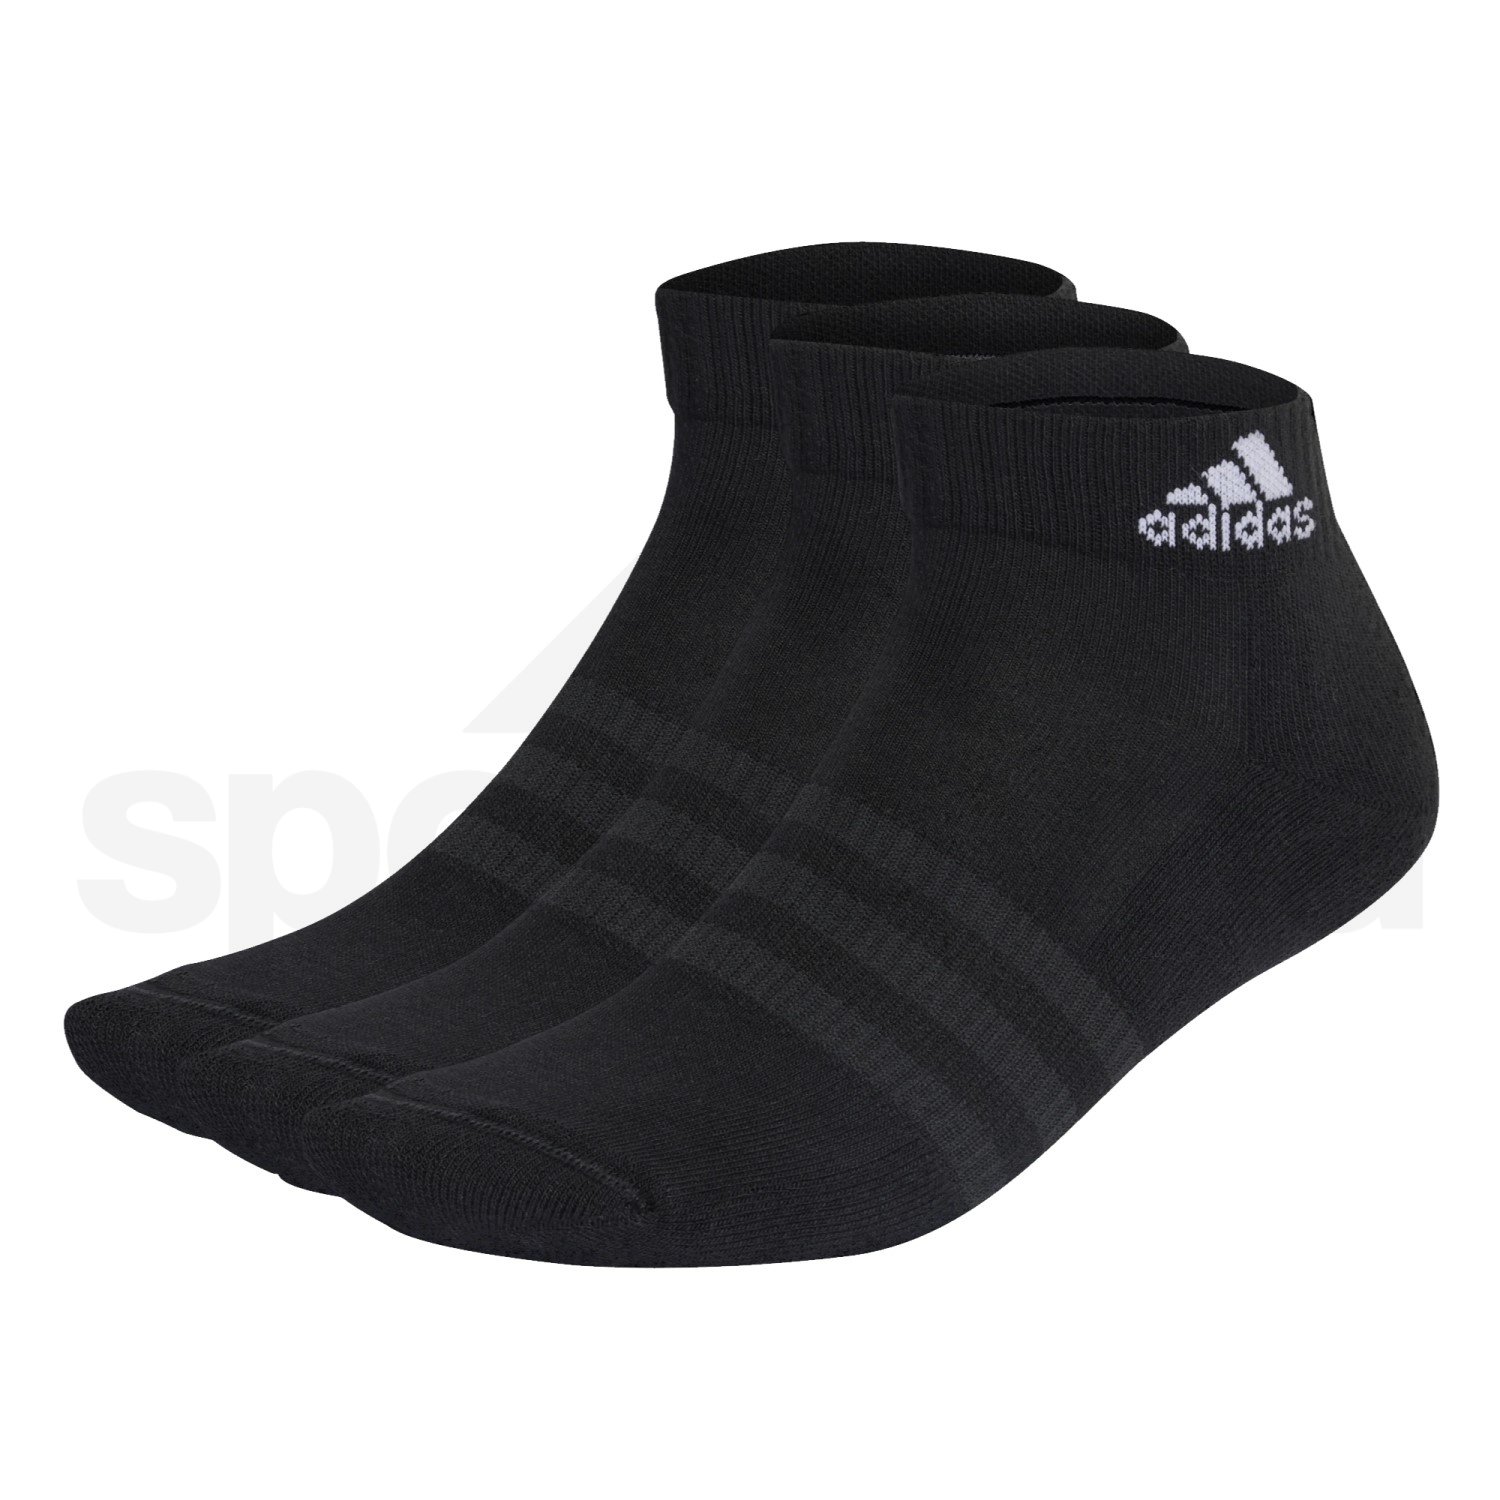 Ponožky Adidas C SPW ANK 3P - černá/bílá